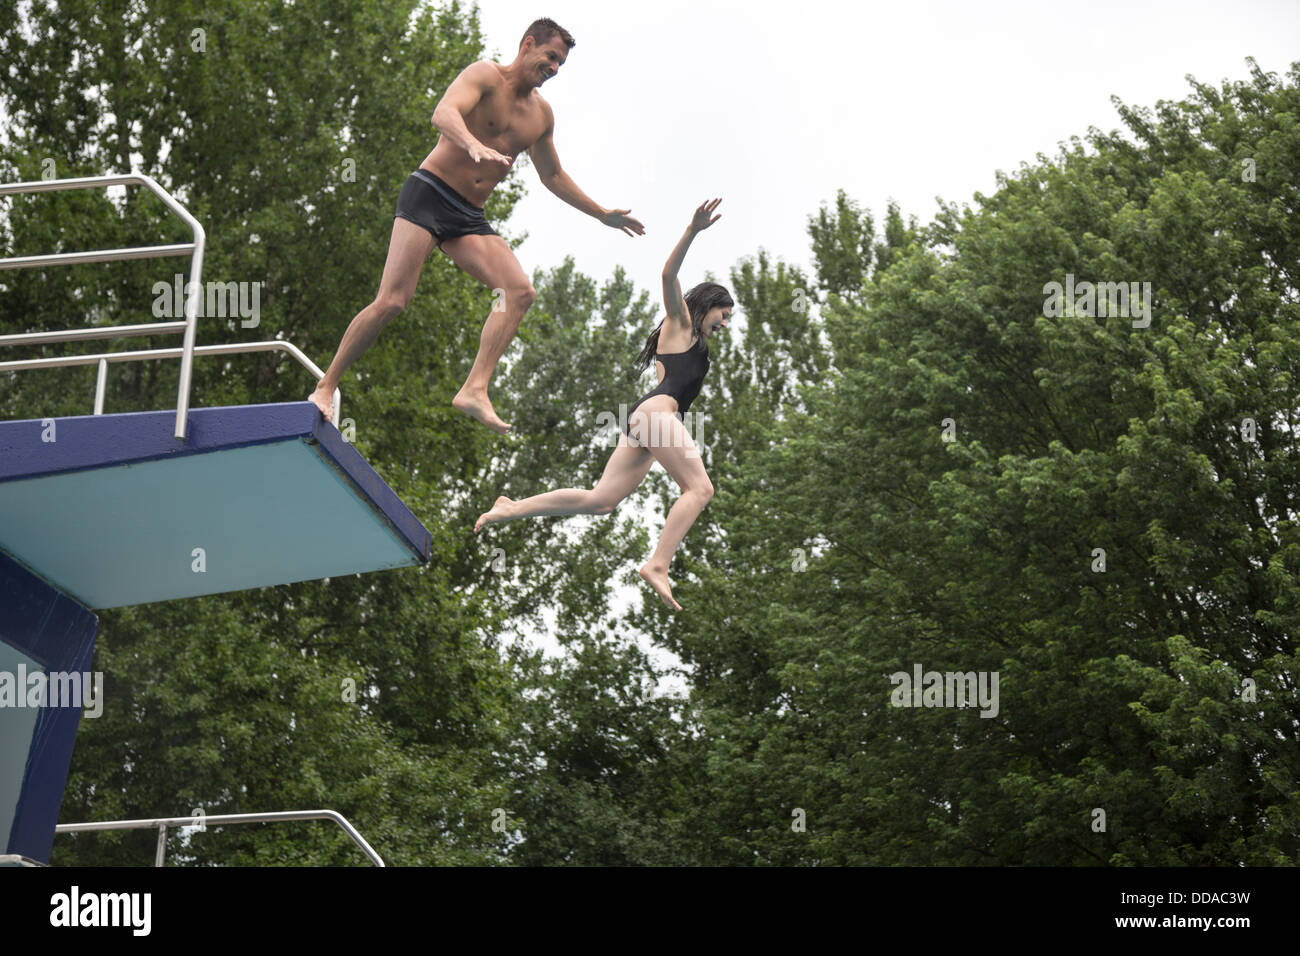 Un paio di saltare fuori una piattaforma subacquea in una piscina pubblica Foto Stock